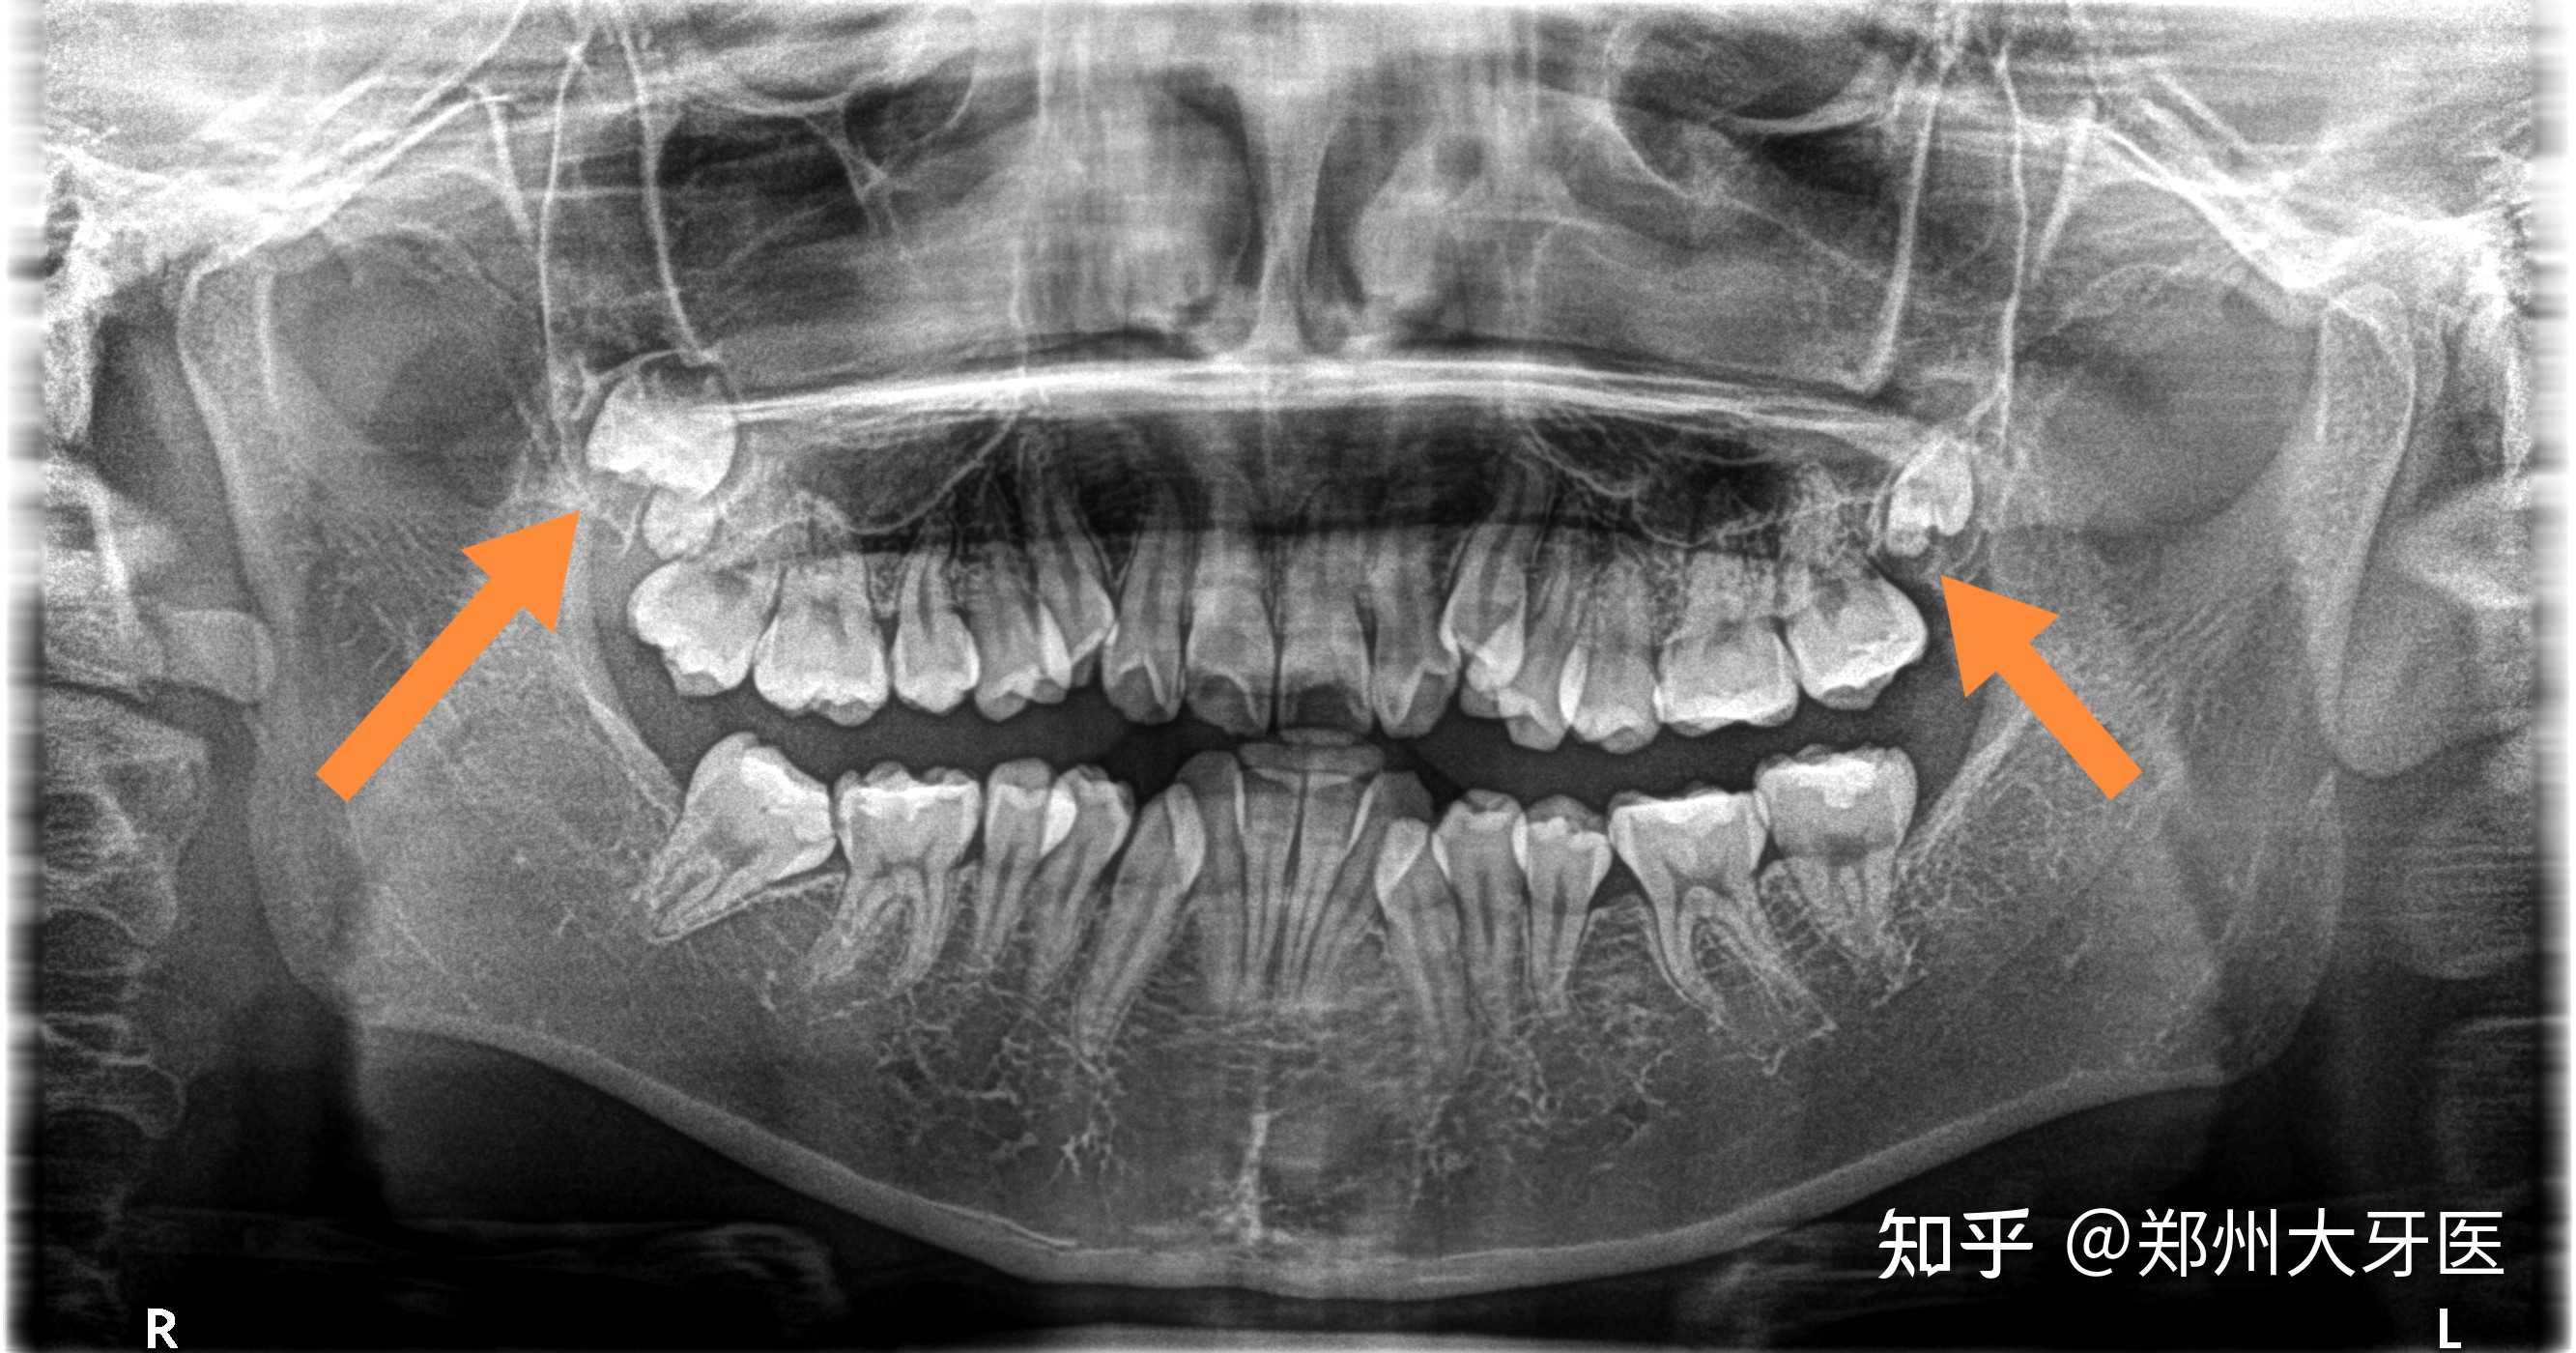 郑州大牙医 的想法: 高位智齿,紧贴上颌窦,风险比较高,操作… - 知乎